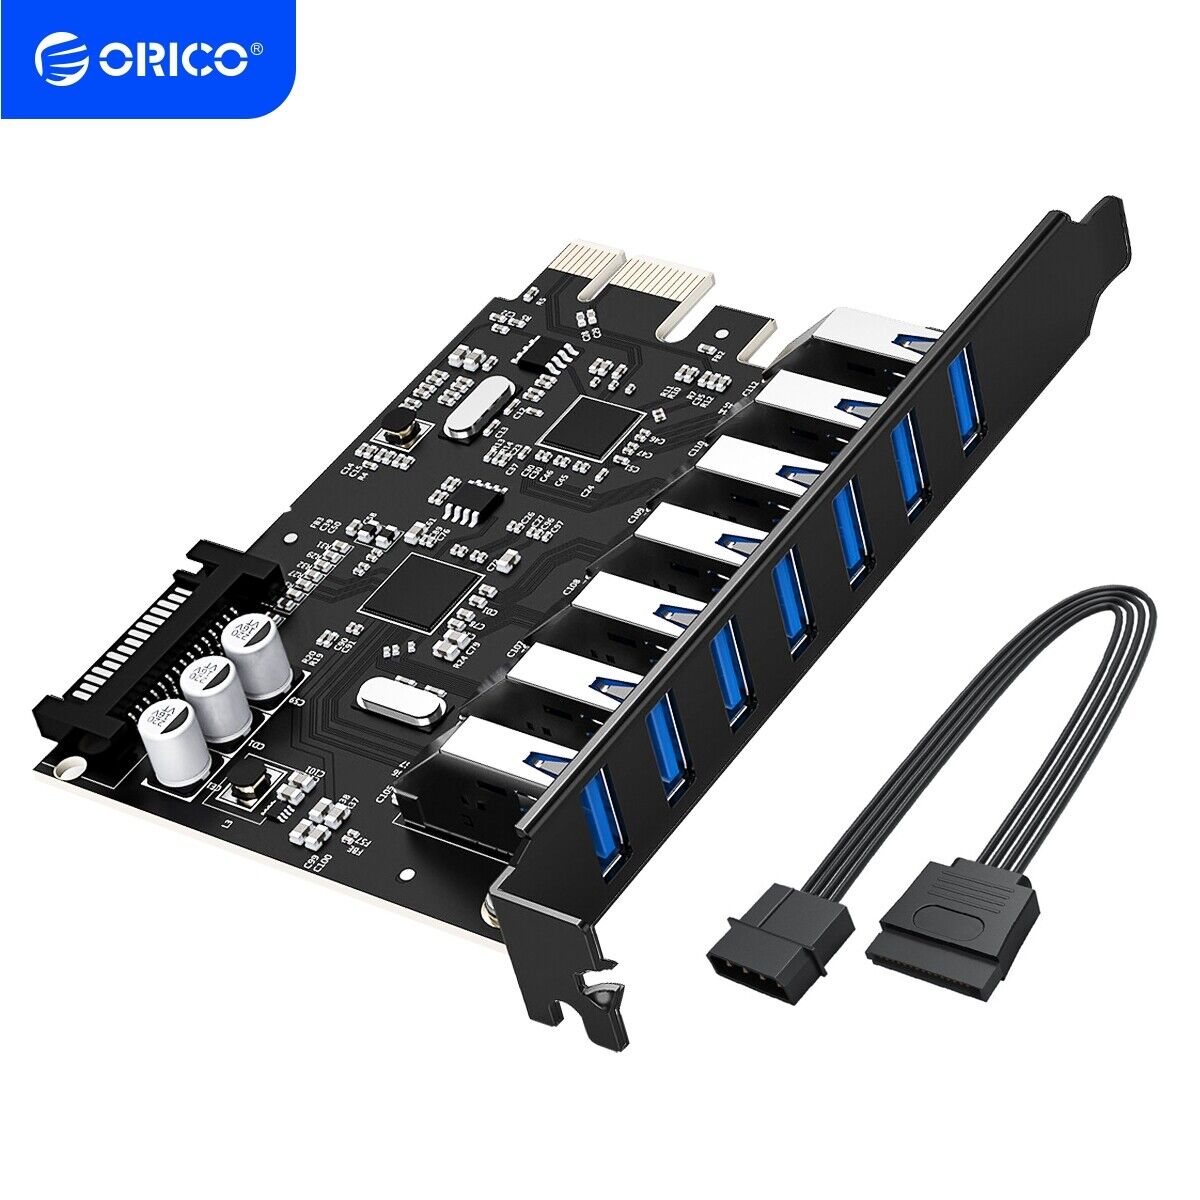 ORICO 7-Port PCI-Express To USB 3.0 Controller Card &15pin SATA Power Connector